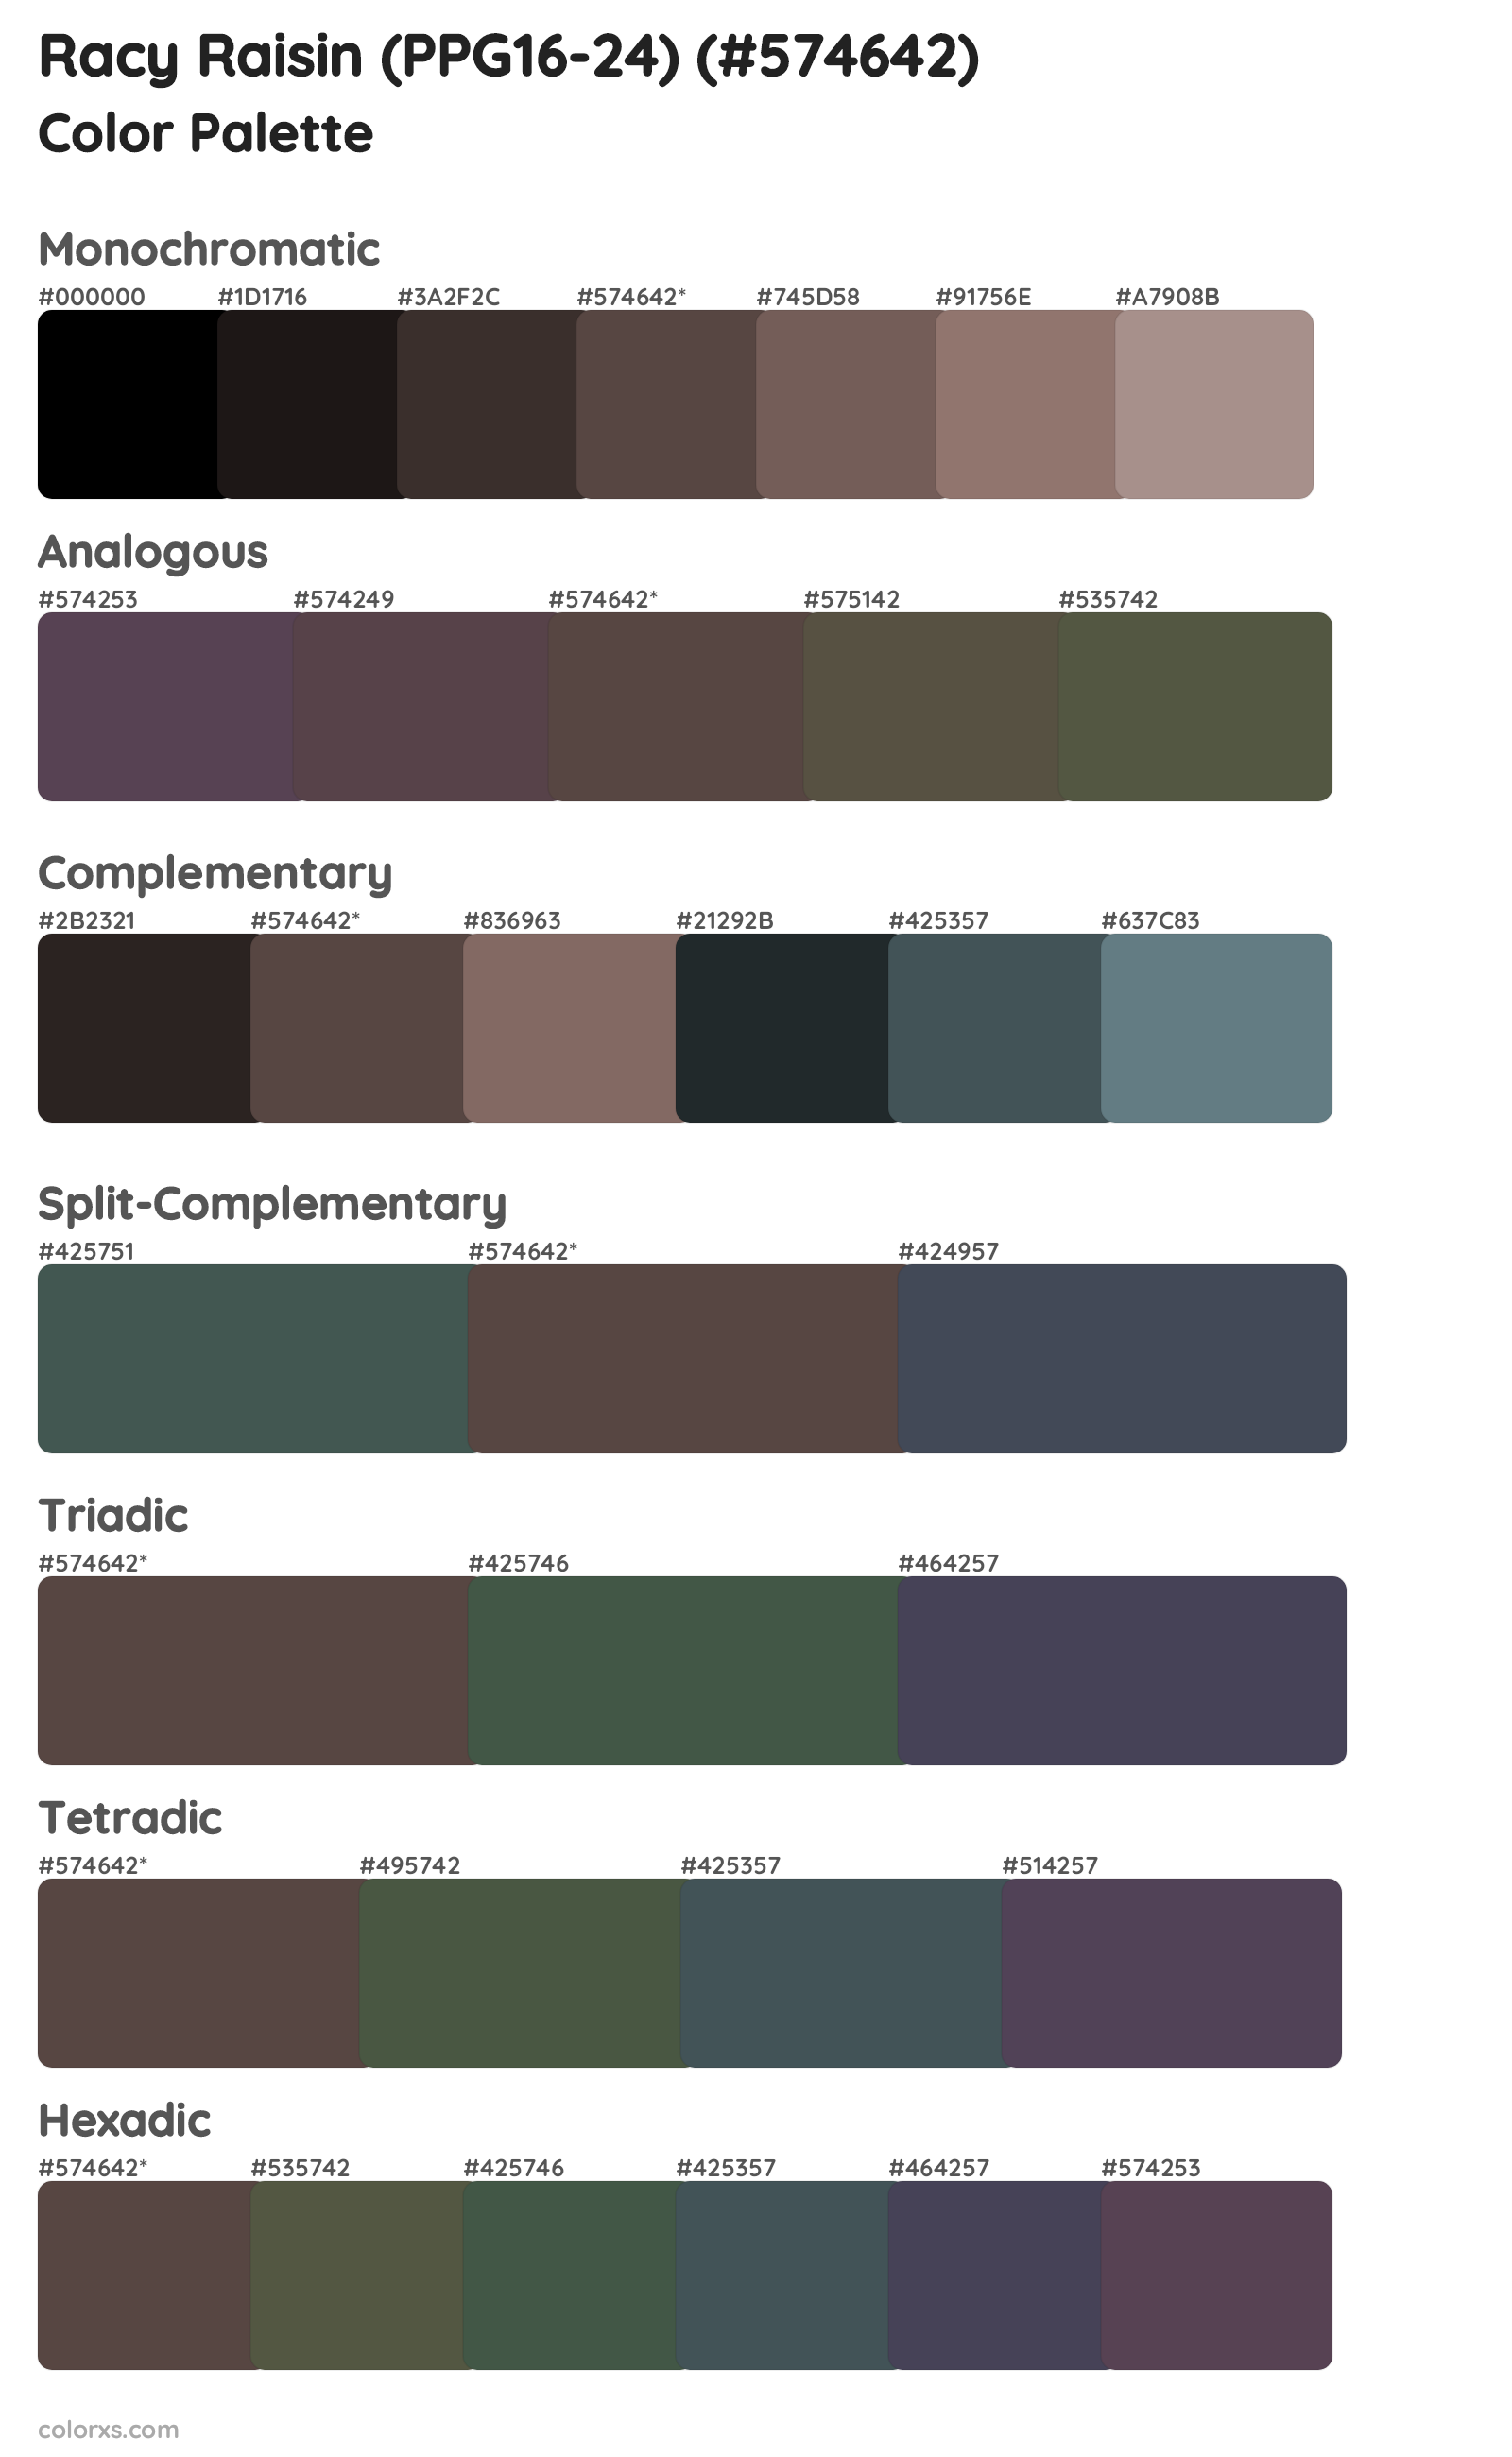 Racy Raisin (PPG16-24) Color Scheme Palettes